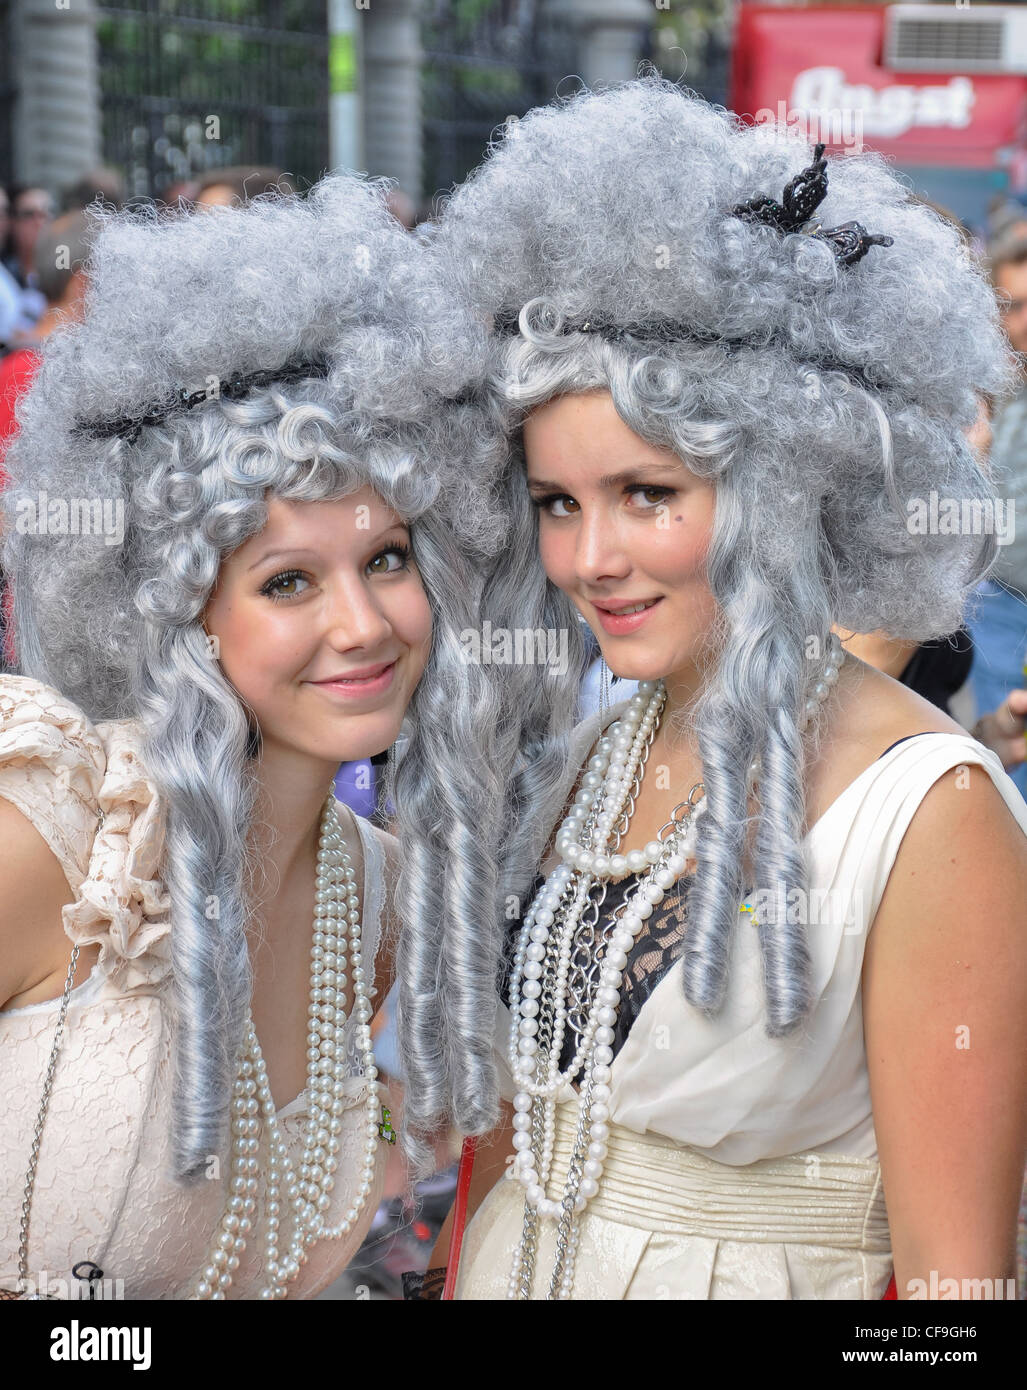 Mädchen posiert mit einer Perücke und Perlen Halskette während der Street Parade 2011 in Zürich. Stockfoto